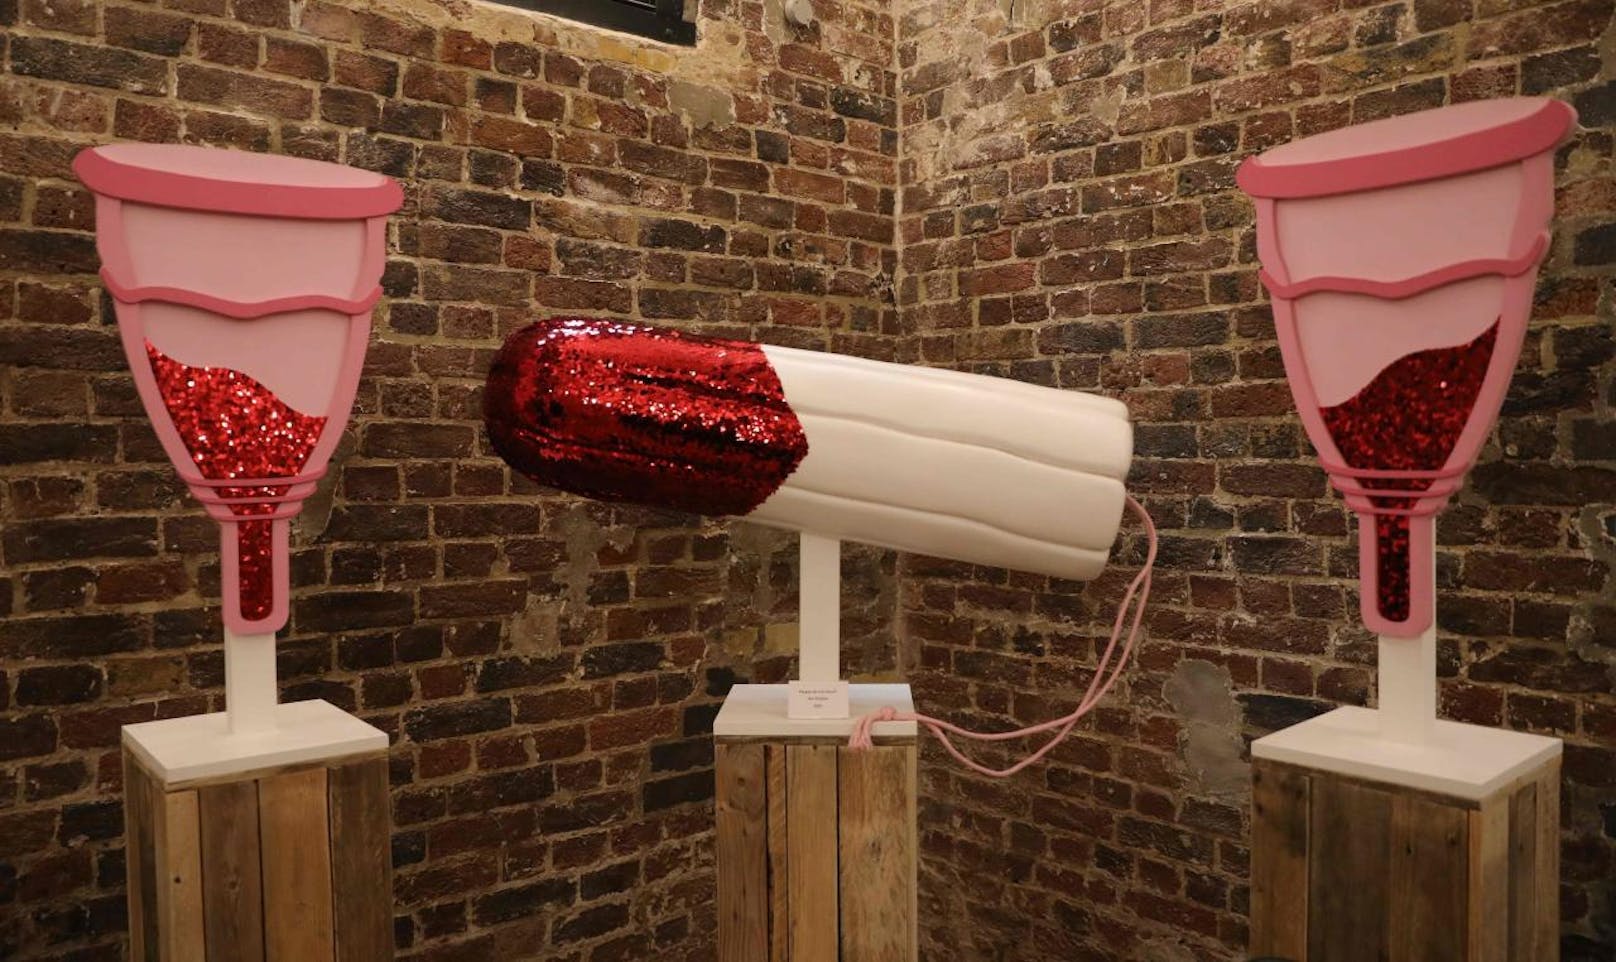 Das Vagina-Museum am Camden Market im Norden Londons will aufklären und mit falschen Tabus aufräumen.